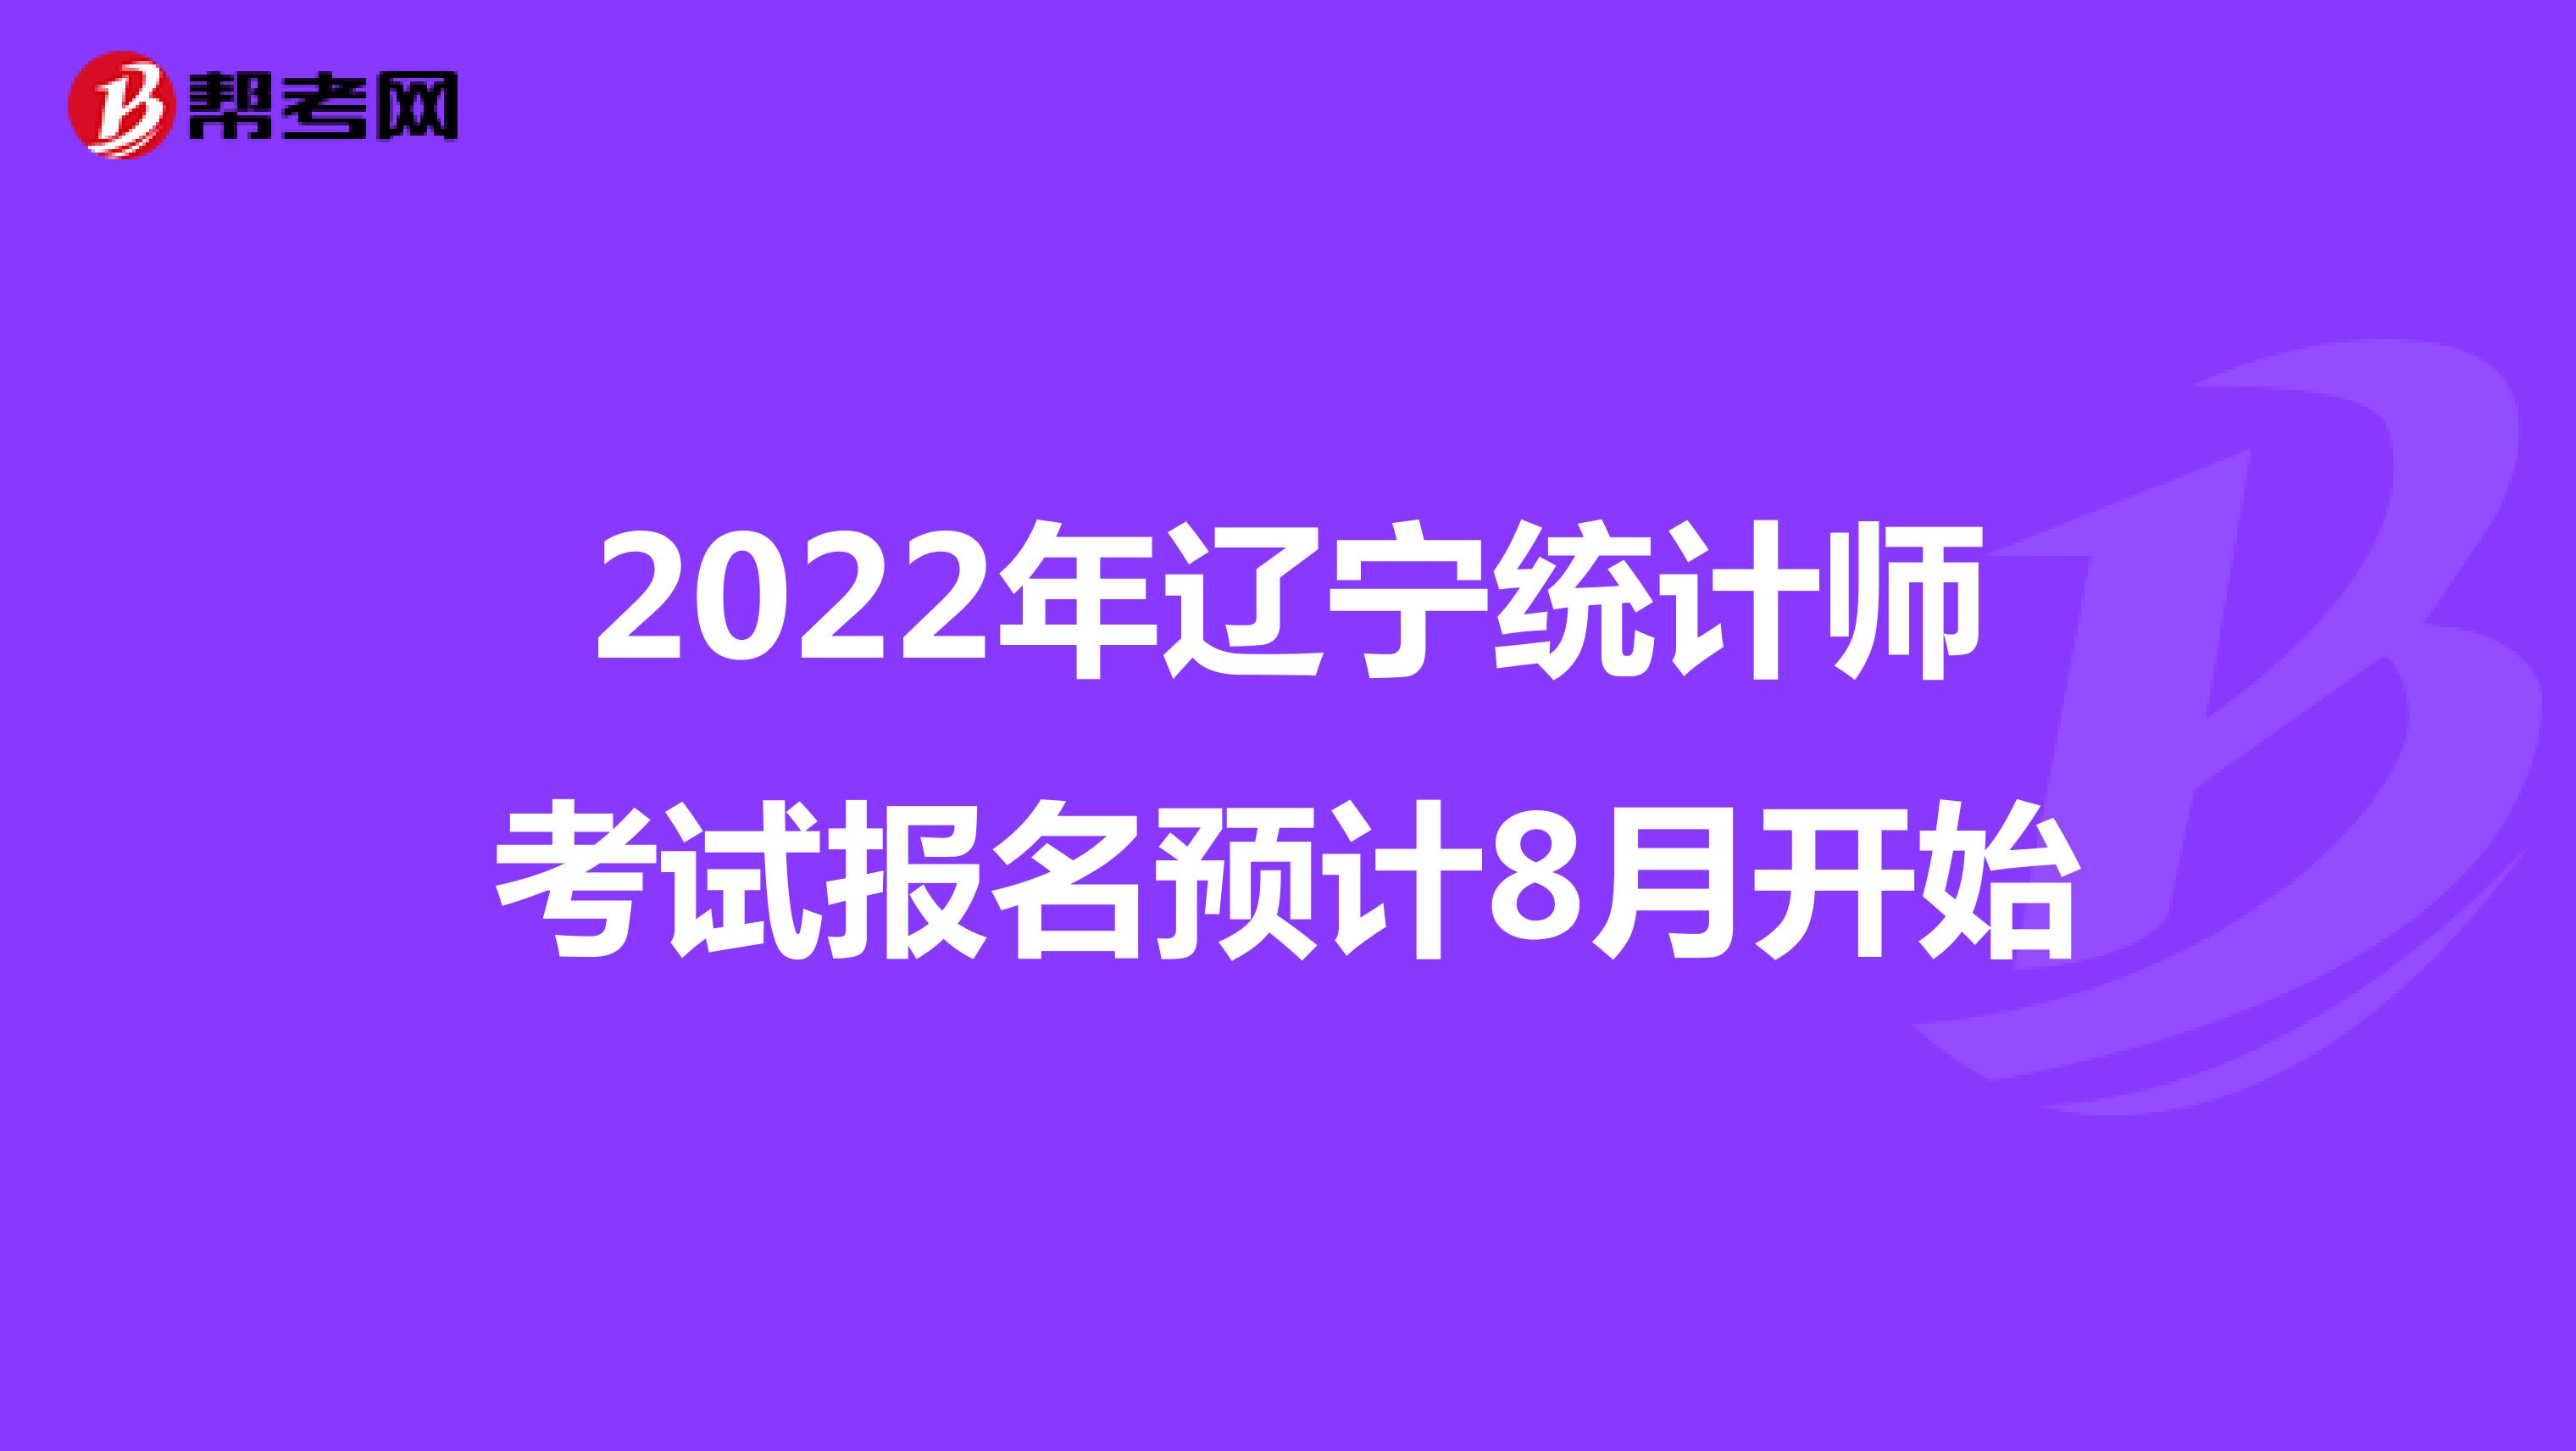 2022年辽宁统计师考试报名预计8月开始